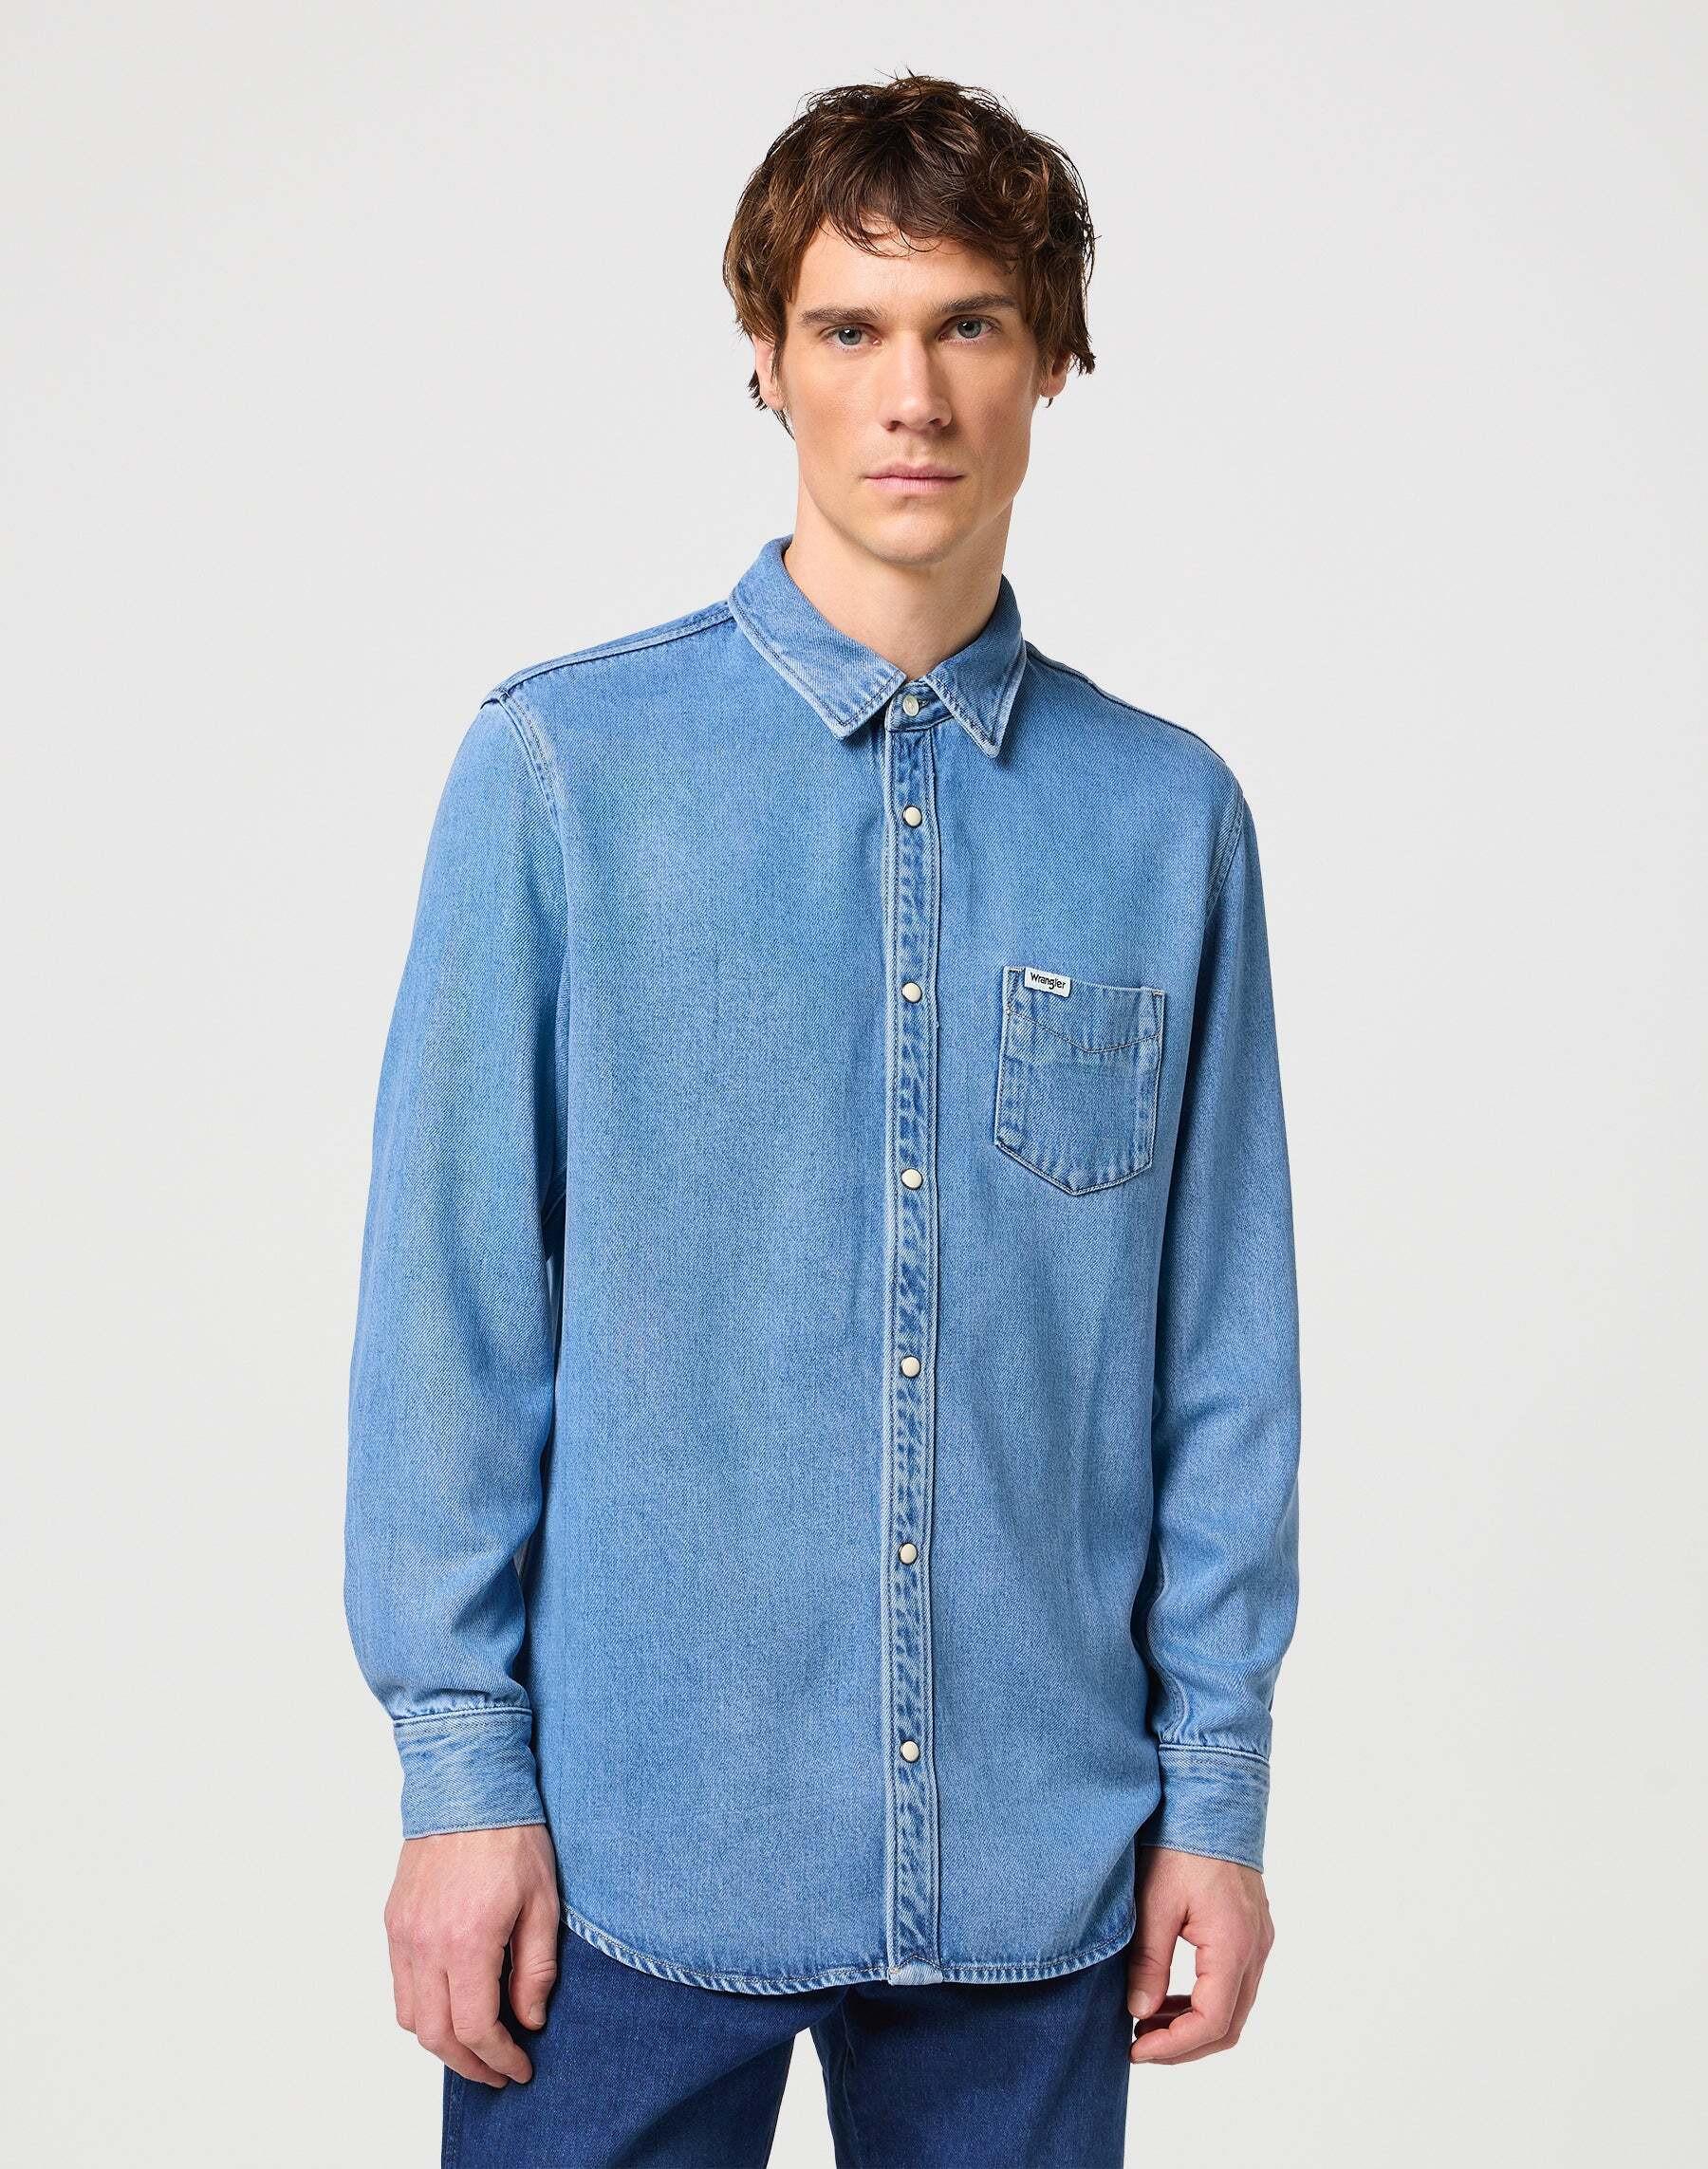 Hemden Longsleeves One Pocket Shirt Herren Blau XL von Wrangler